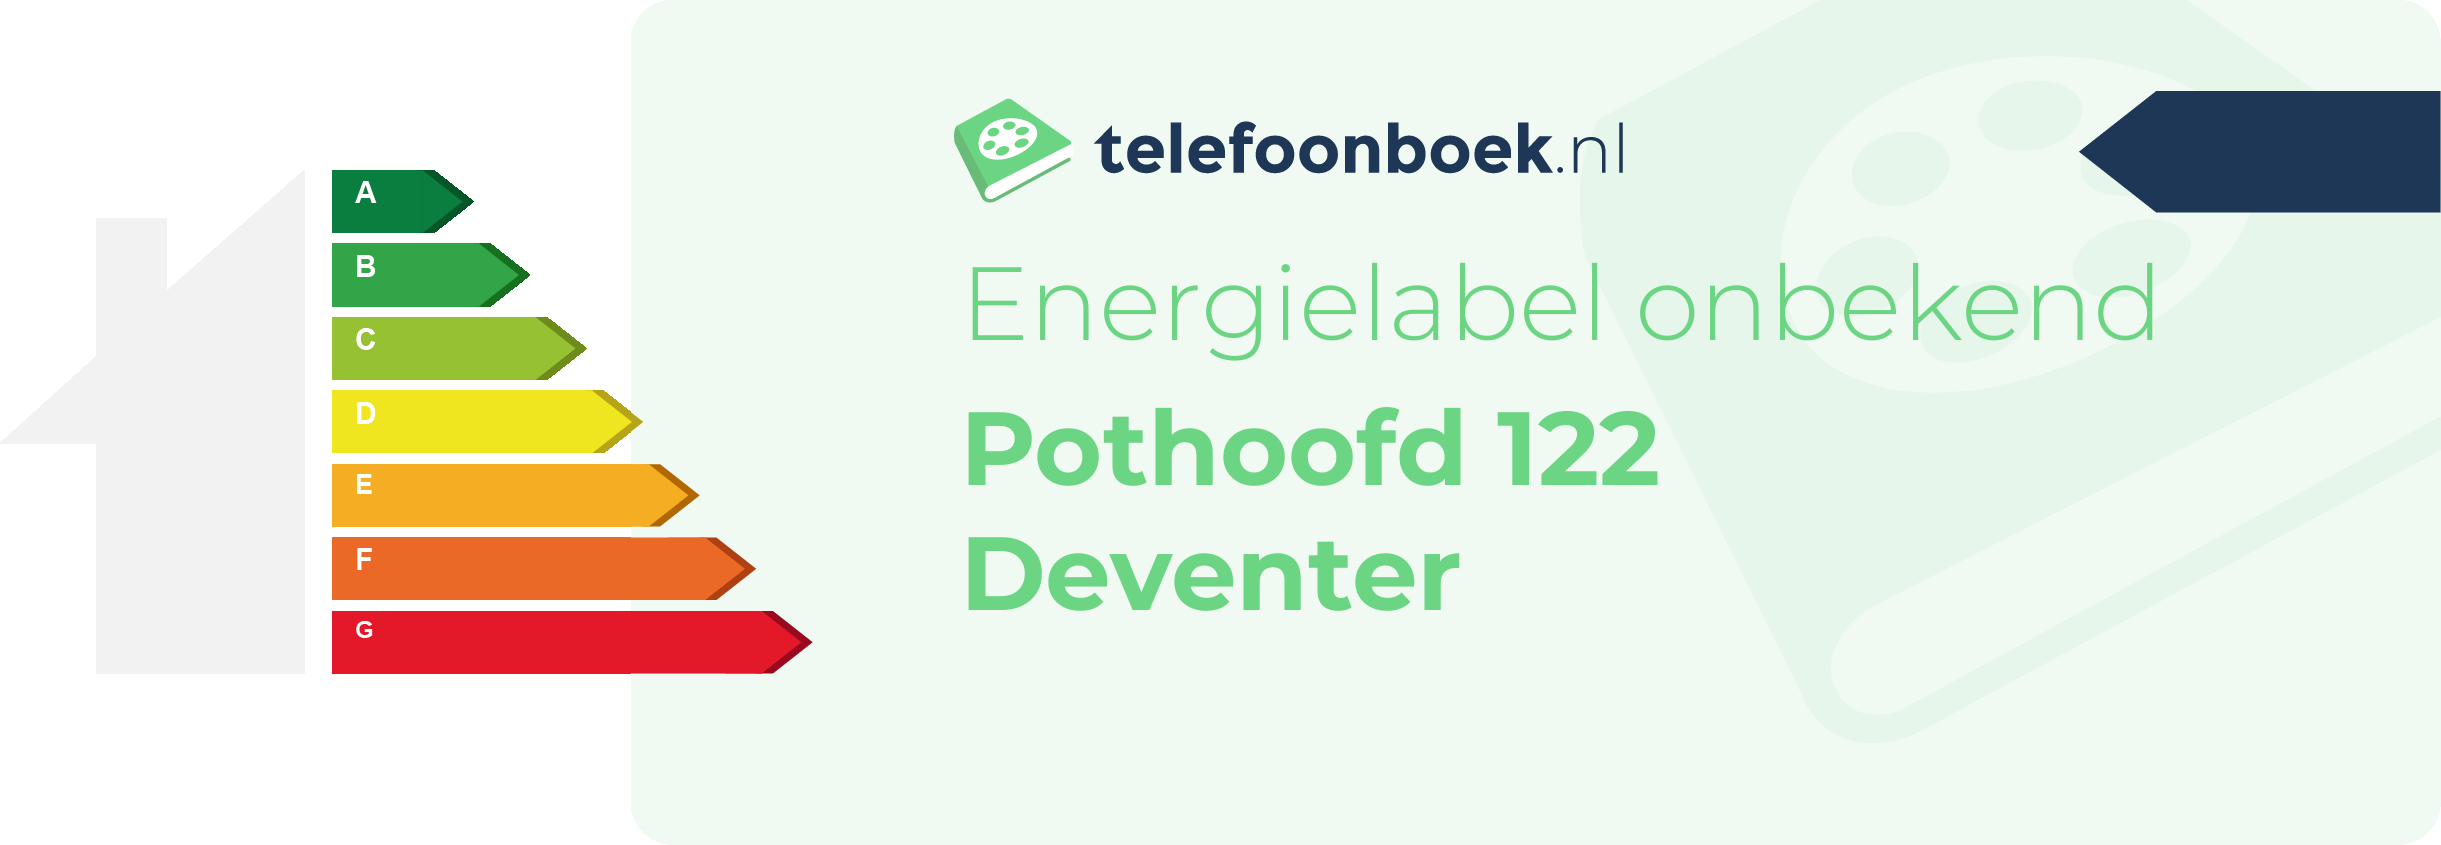 Energielabel Pothoofd 122 Deventer